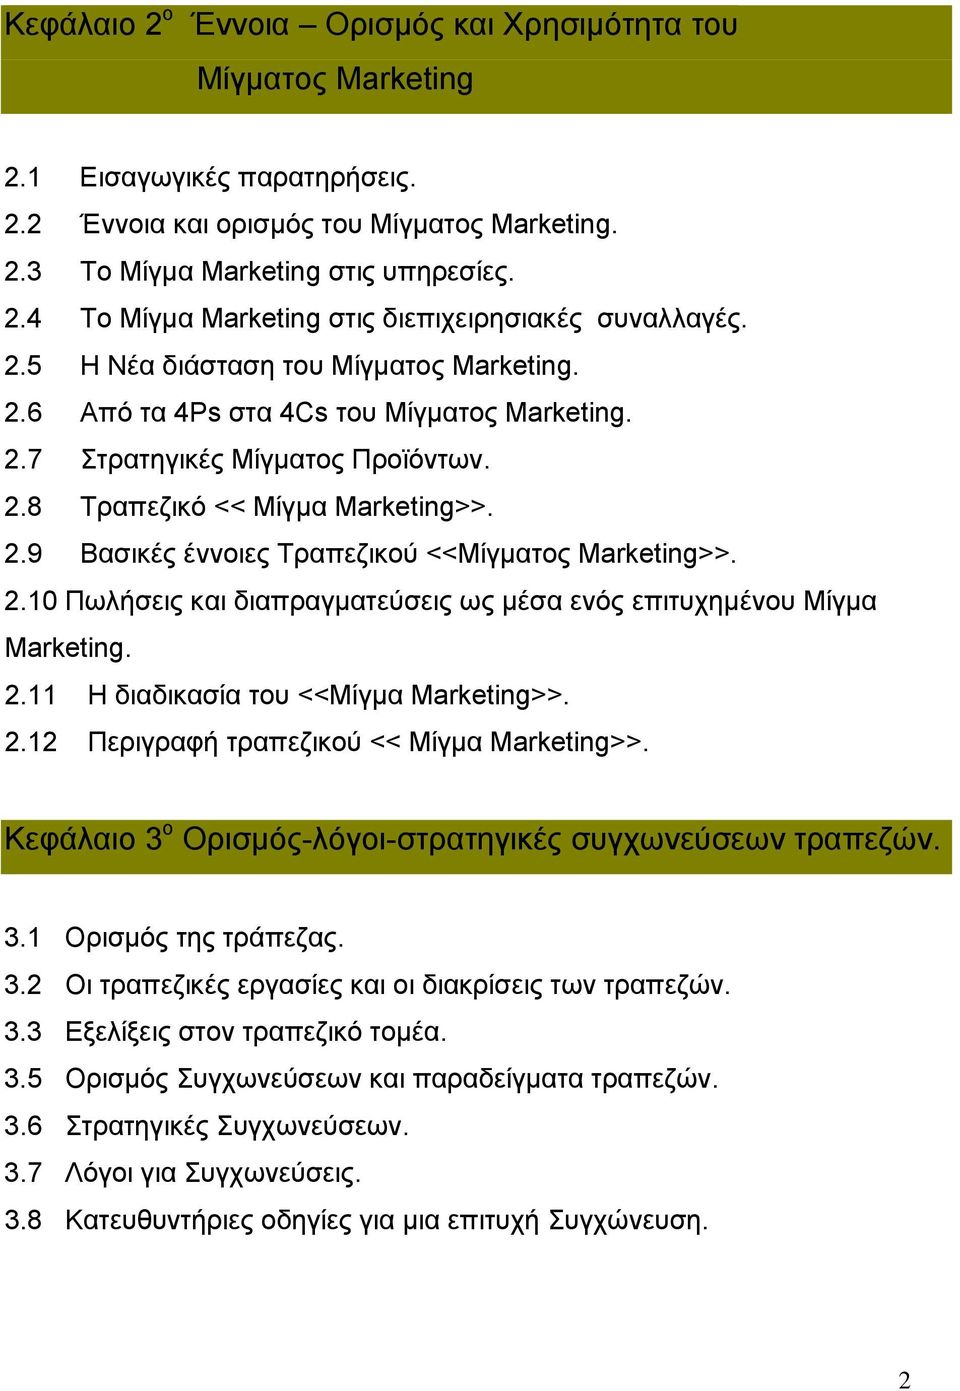 2.10 Πωλήσεις και διαπραγματεύσεις ως μέσα ενός επιτυχημένου Μίγμα Marketing. 2.11 Η διαδικασία του <<Μίγμα Marketing>>. 2.12 Περιγραφή τραπεζικού << Μίγμα Marketing>>.